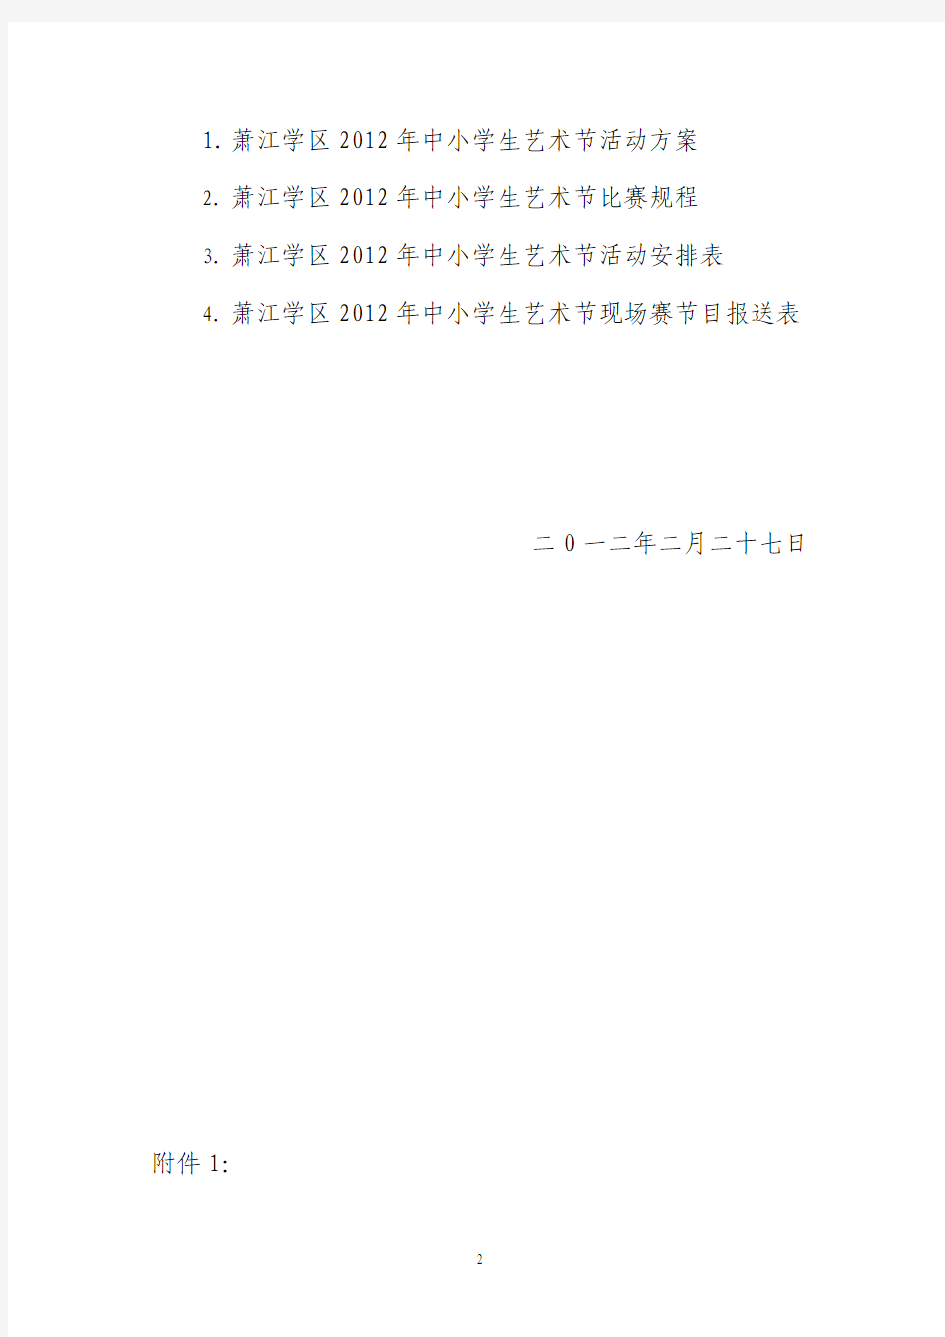 平阳县教育局萧江学区关于举办2012年中小学艺术节的通知